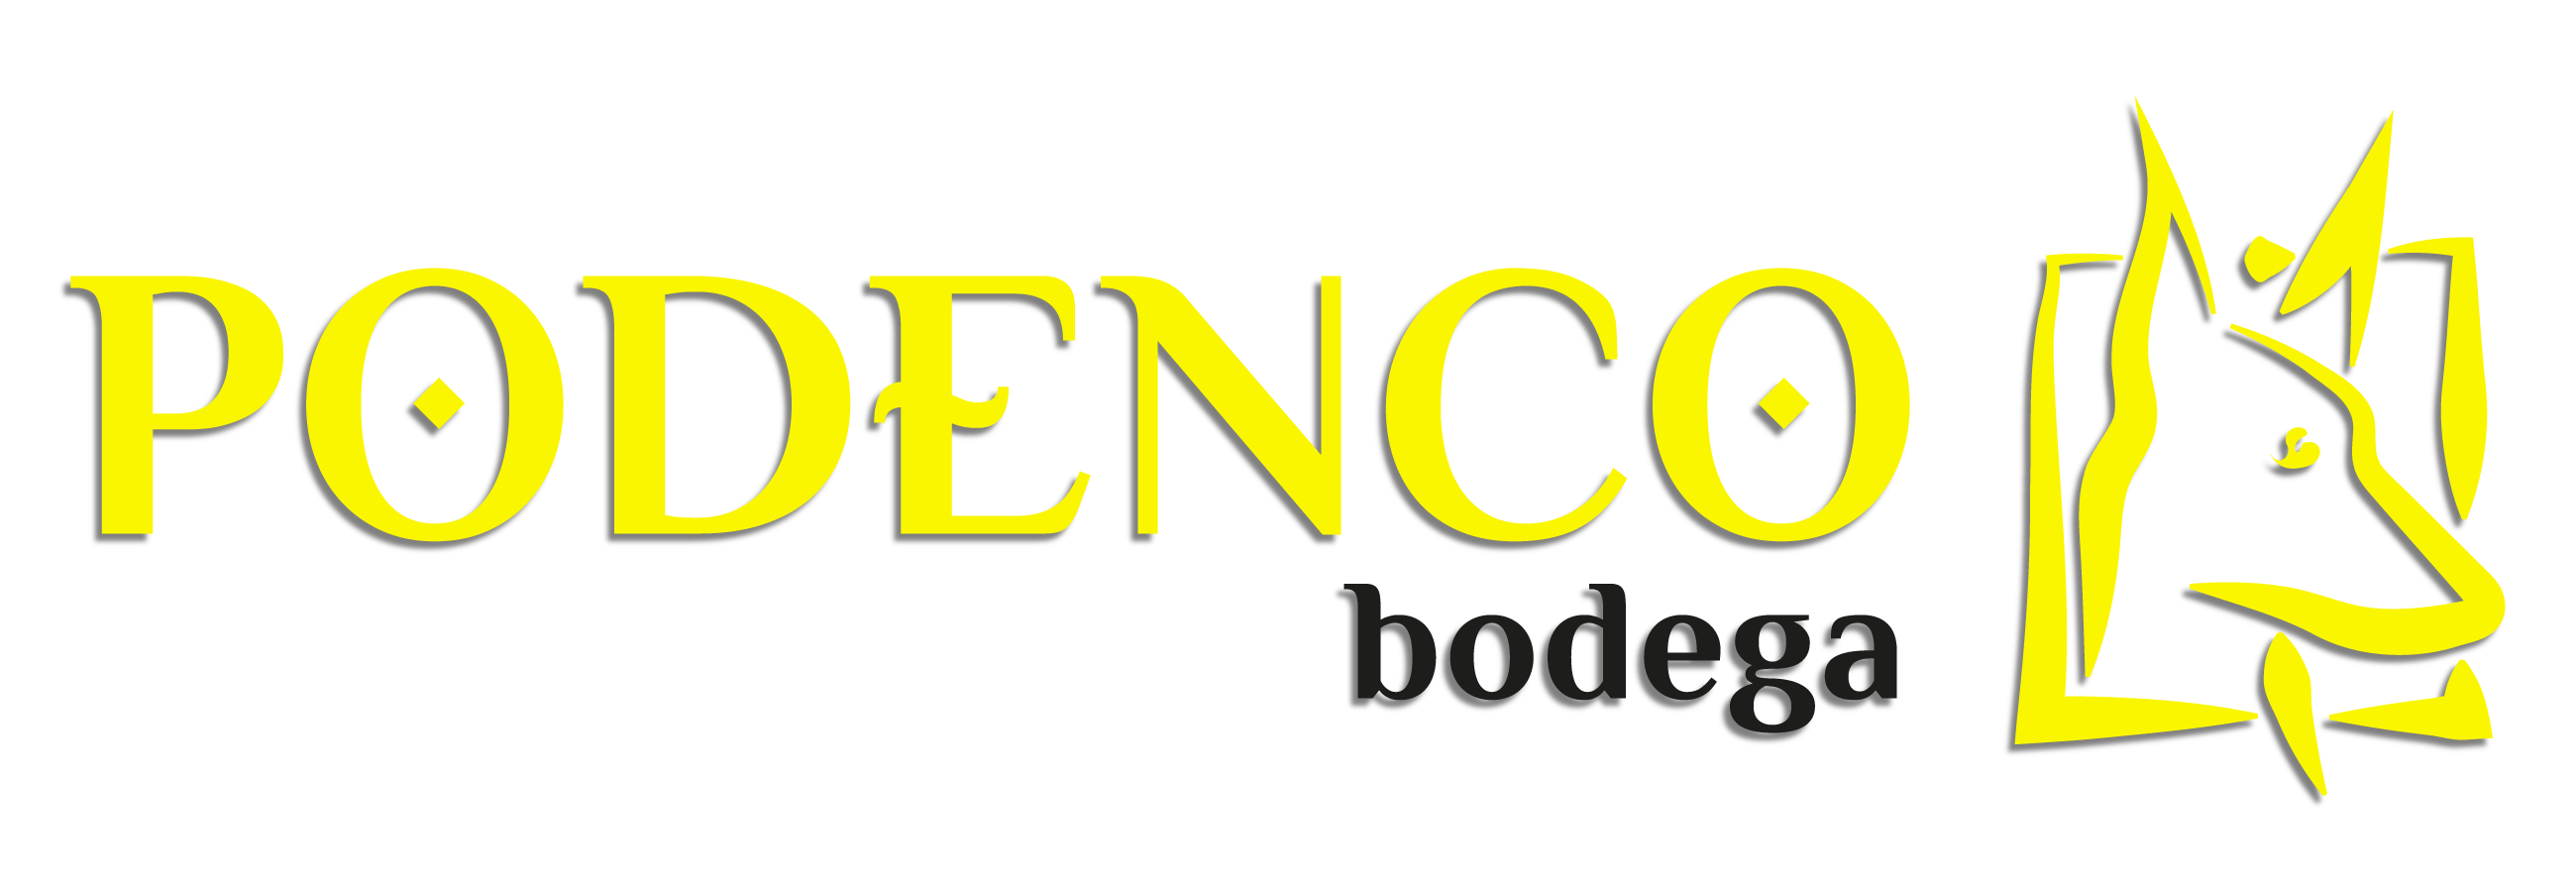 Logo PODENCO Bodega